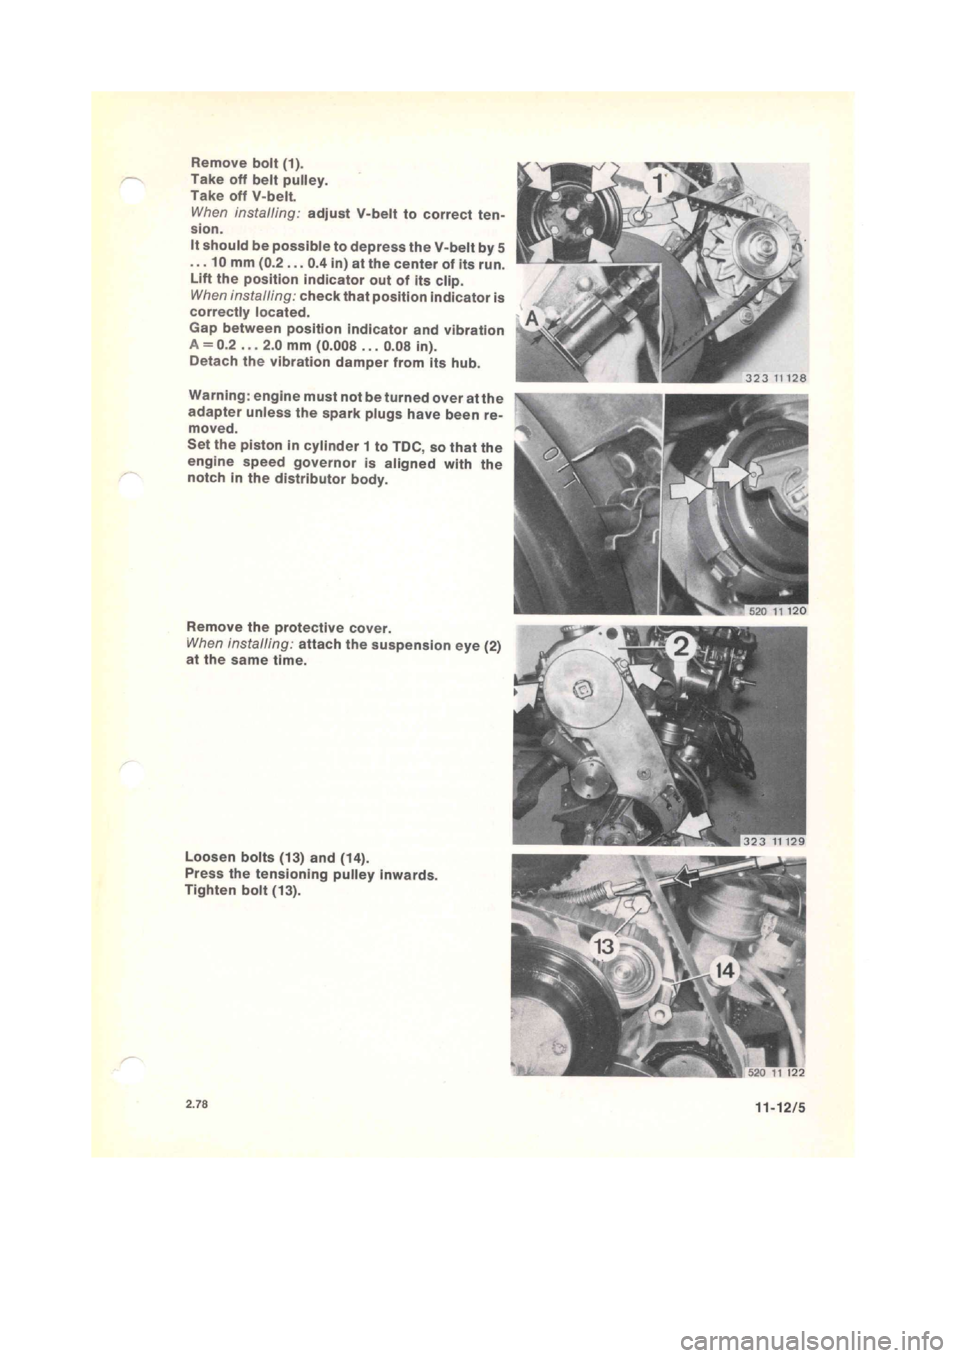 BMW 320i 1980 E21 M20 Engine Manual PDF 